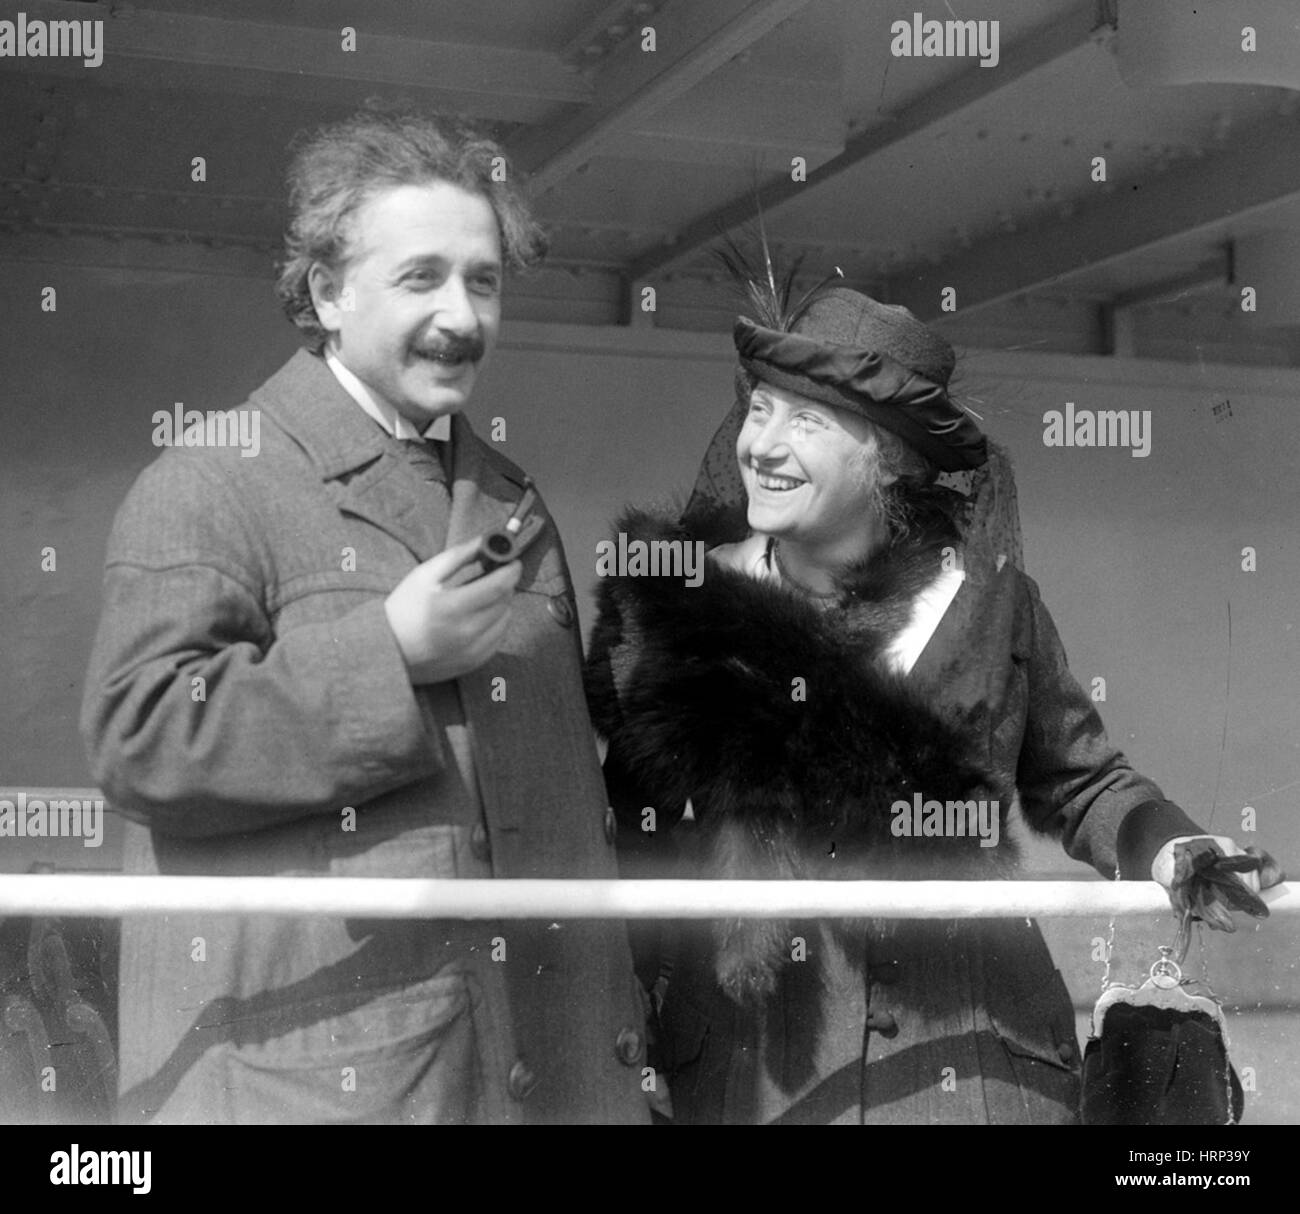 Albert Einstein y Elsa, c. 1920s Foto de stock